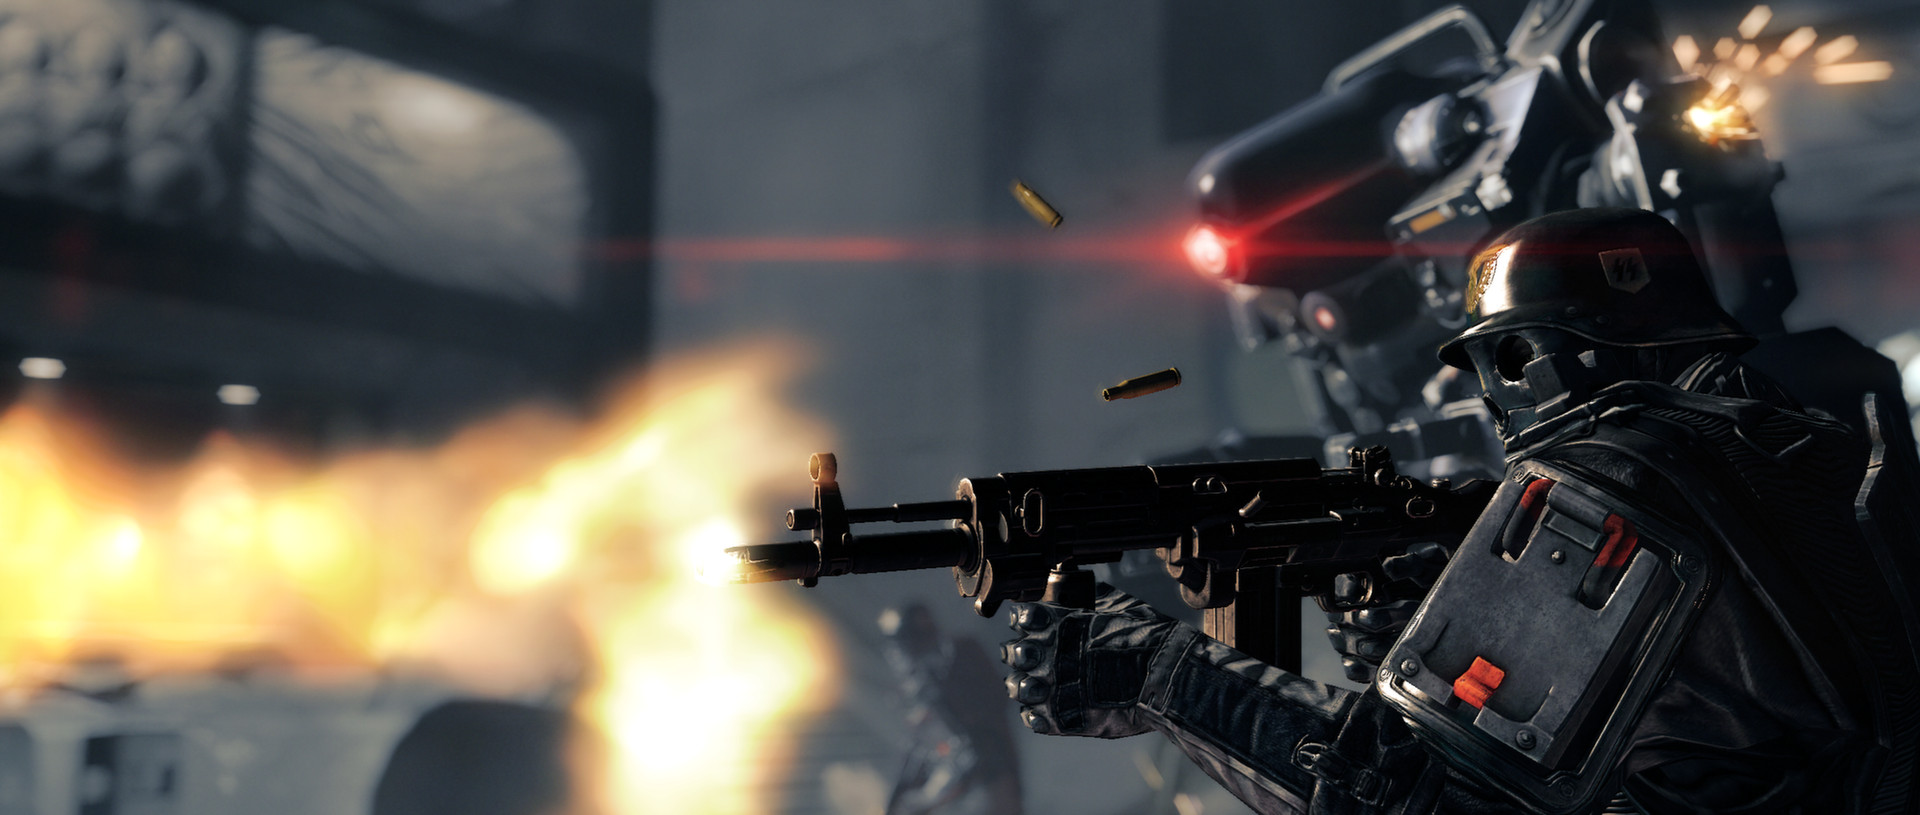 Wolfenstein: The New Order review: machine gun